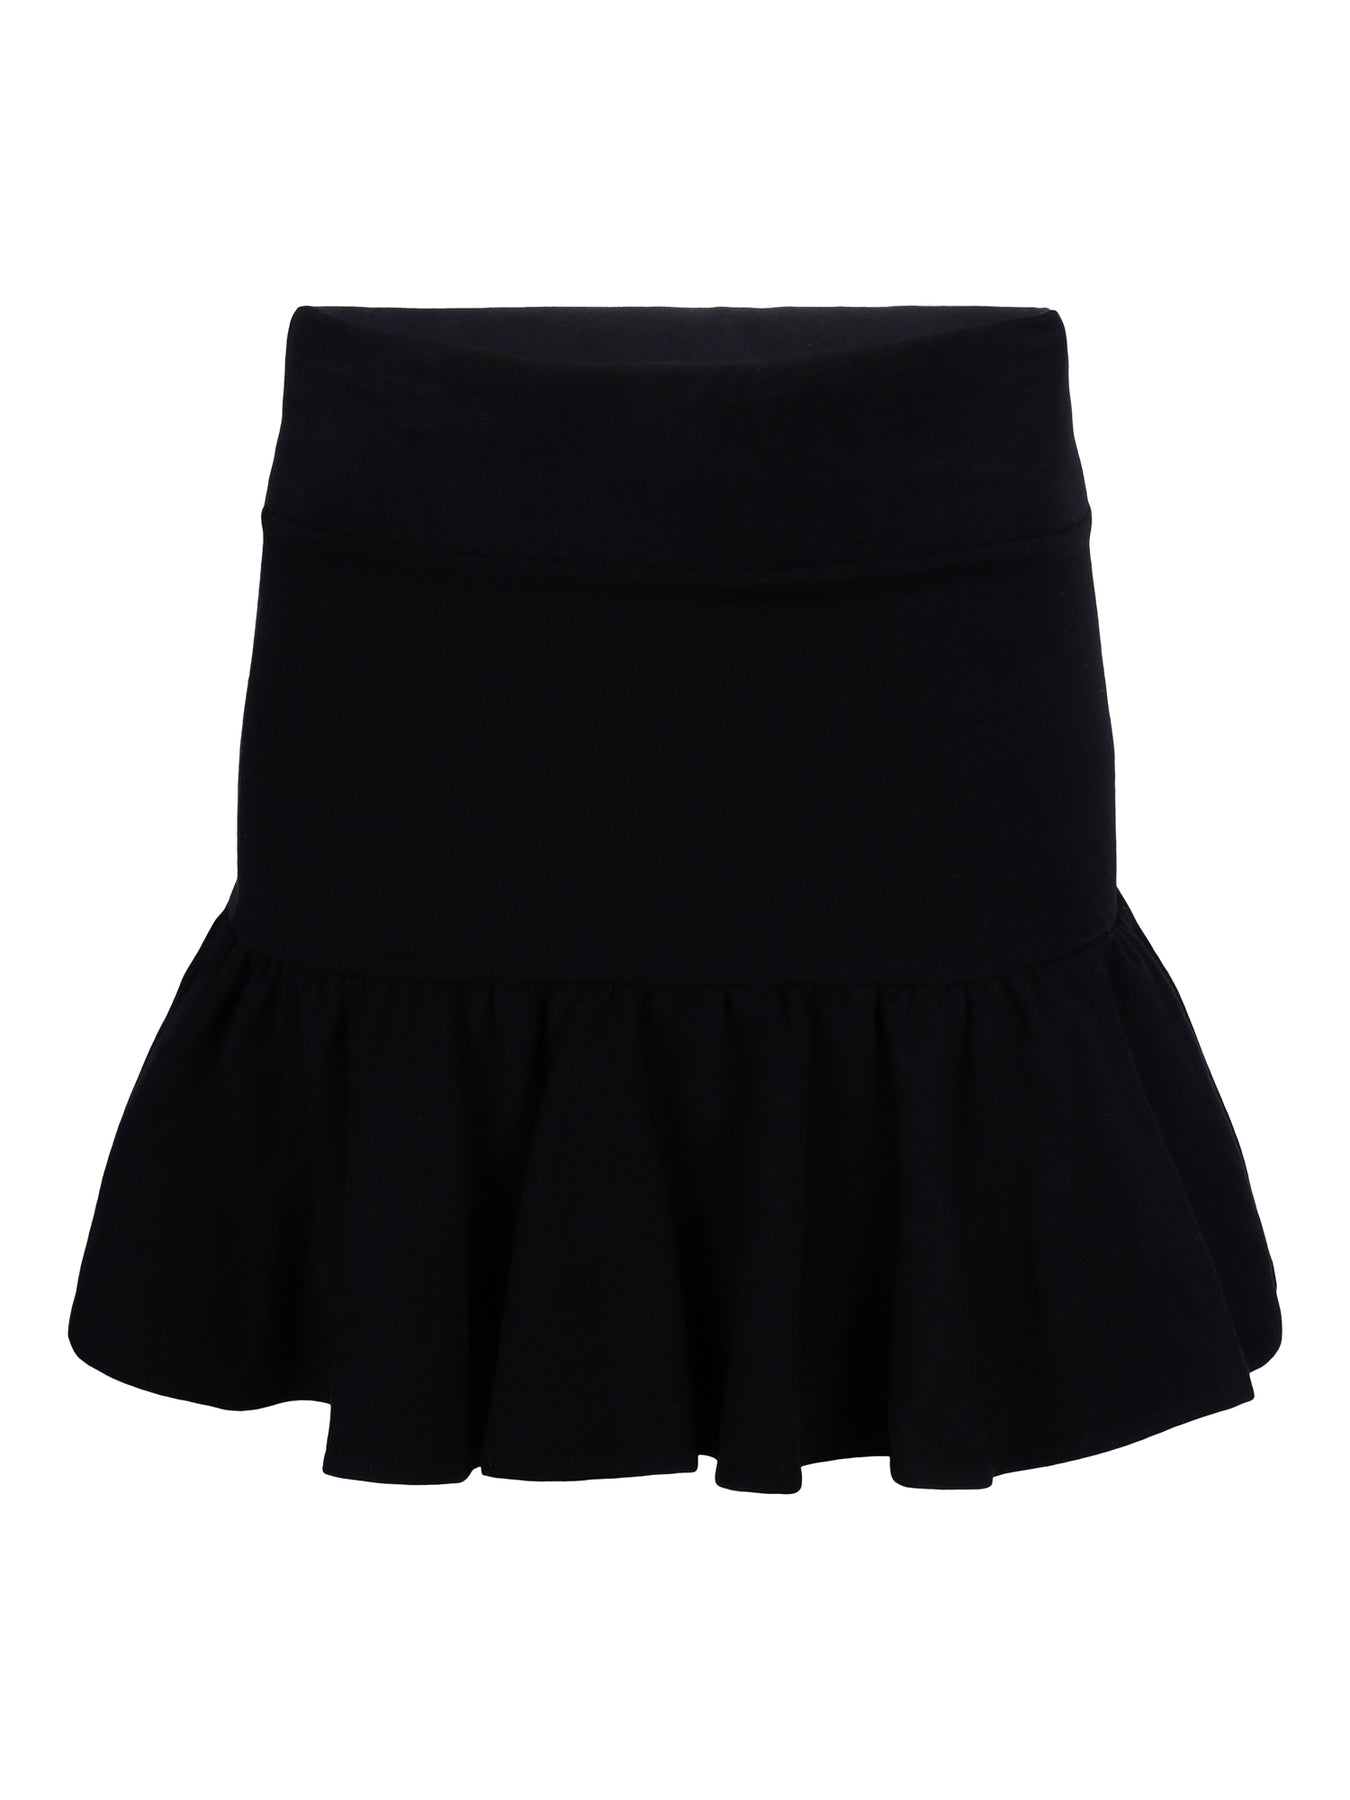 Ginger Skirt - Black